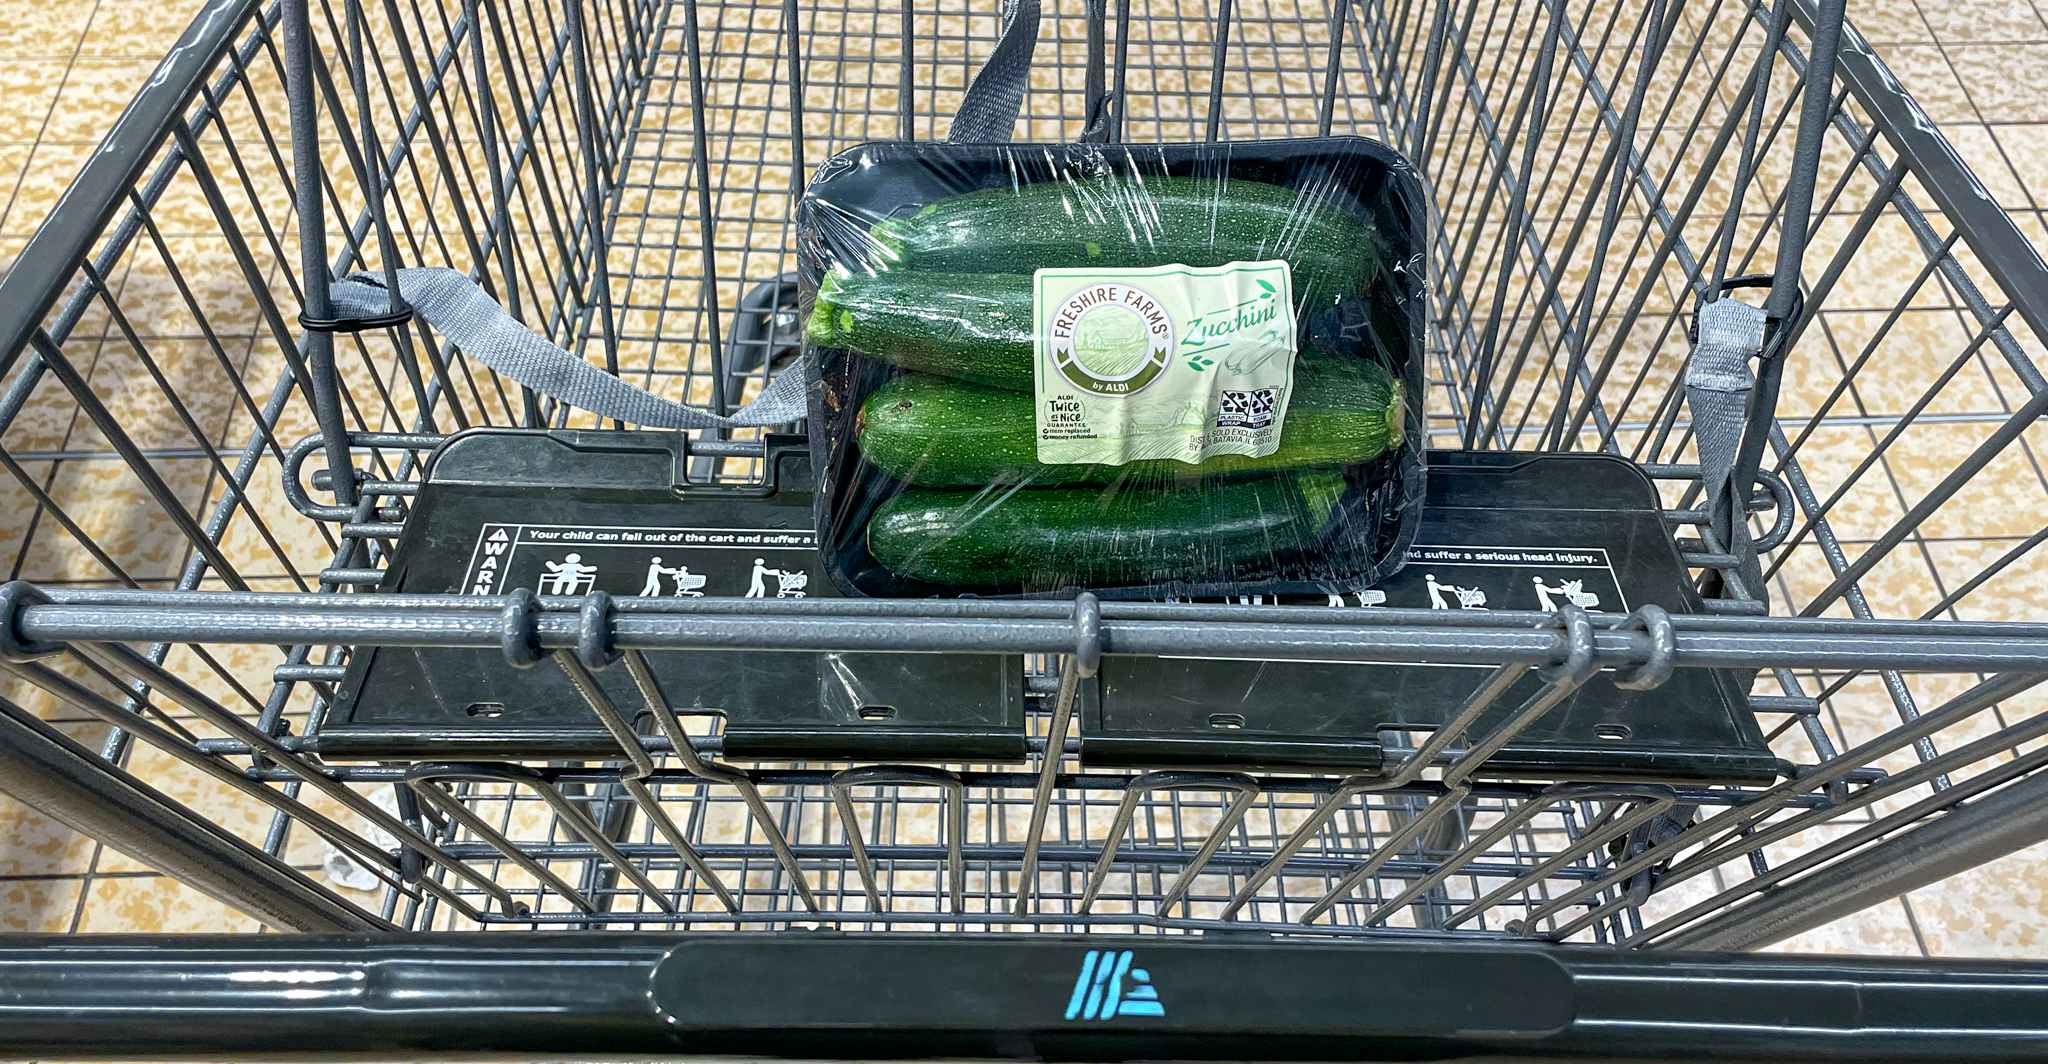 Zucchini in a cart at aldi